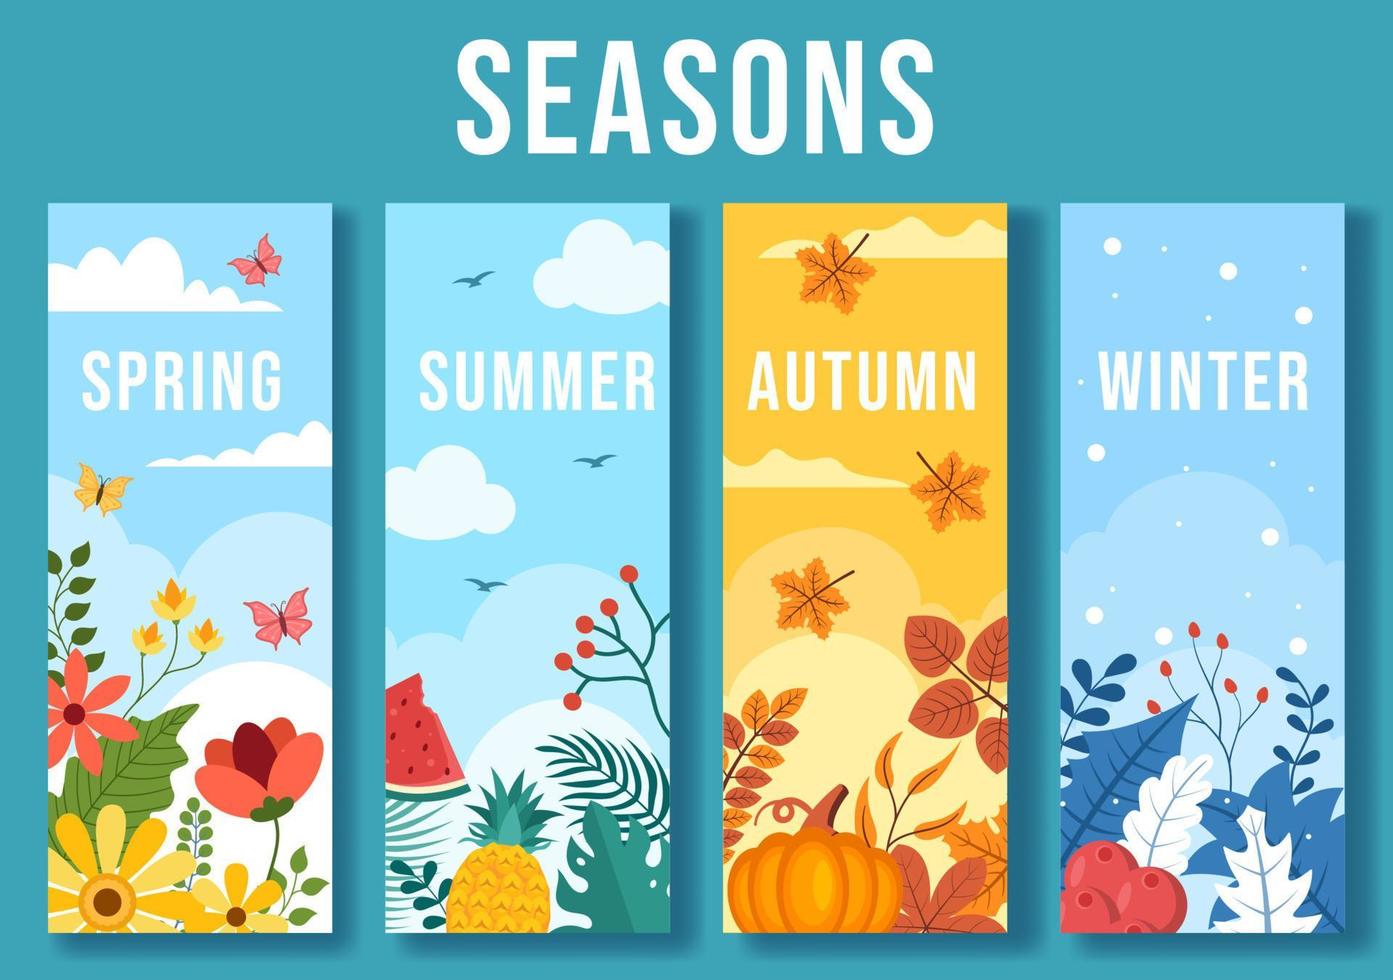 paysage des quatre saisons de la nature avec paysage printemps, été, automne et hiver dans le modèle illustration de style plat dessin animé dessiné à la main vecteur